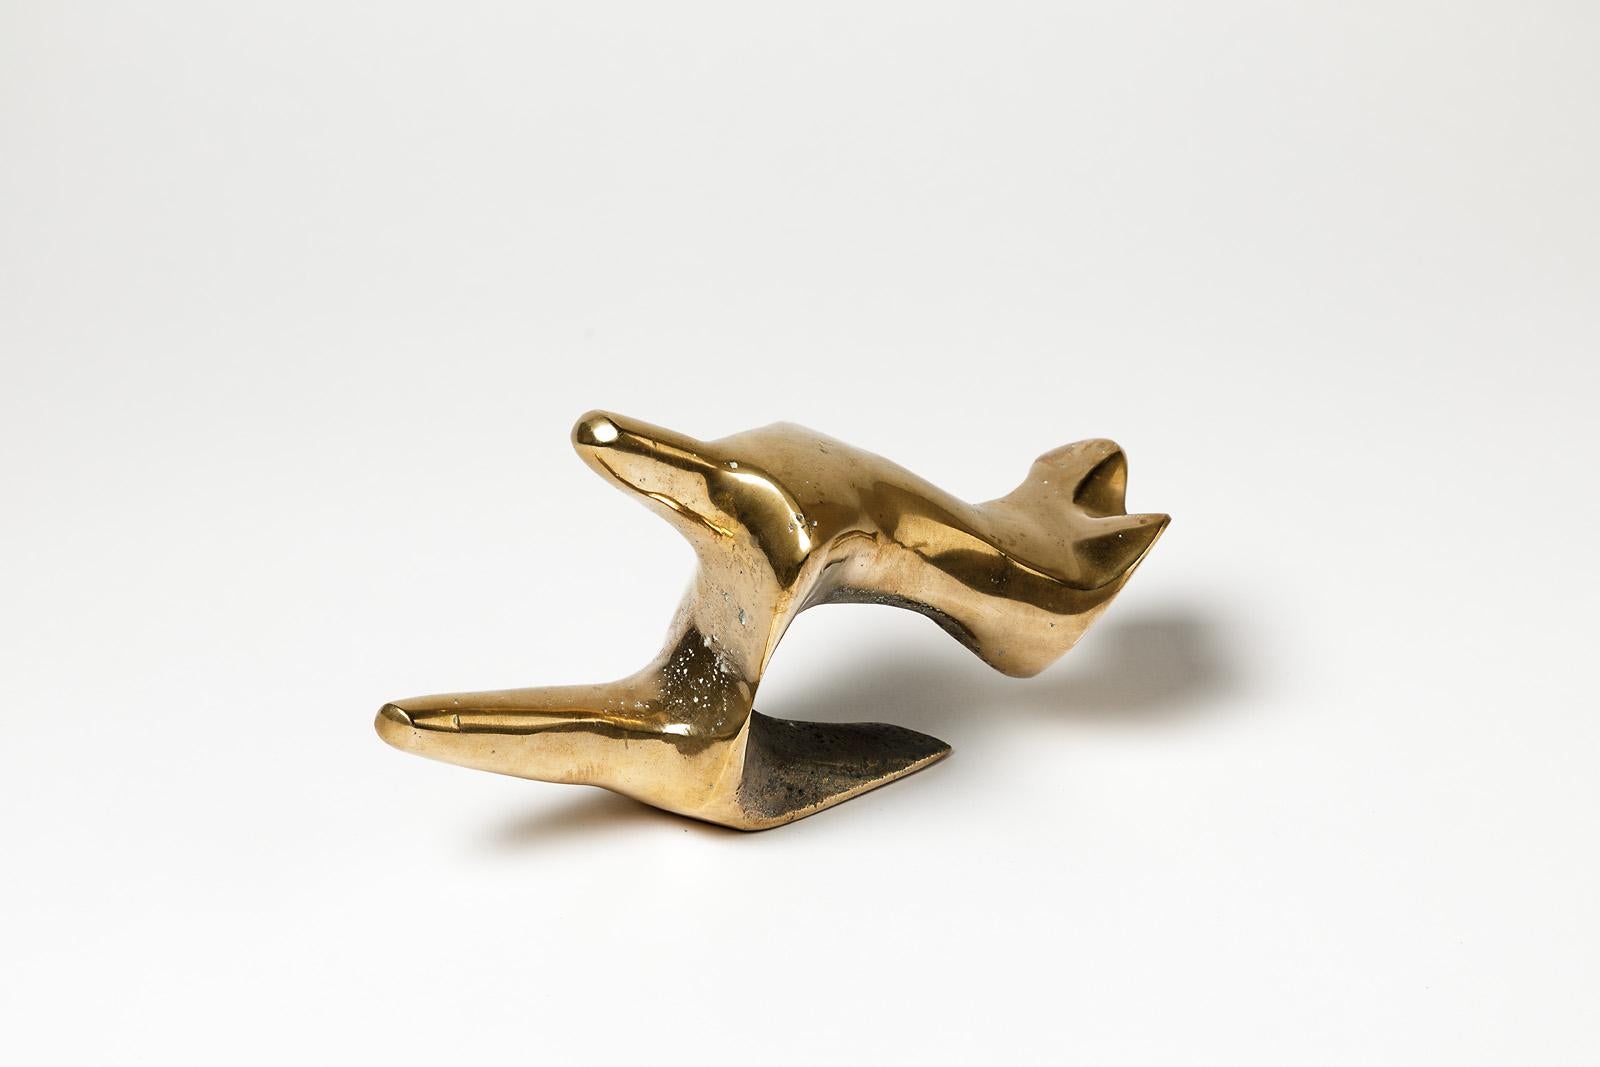 Elegant et rare bronze doré de Tim Orr.

Bronze abstrait très précieux représentant 2 corps abstraits,

vers 1970

Signé sous la base

Dimensions : 12x24x10cm